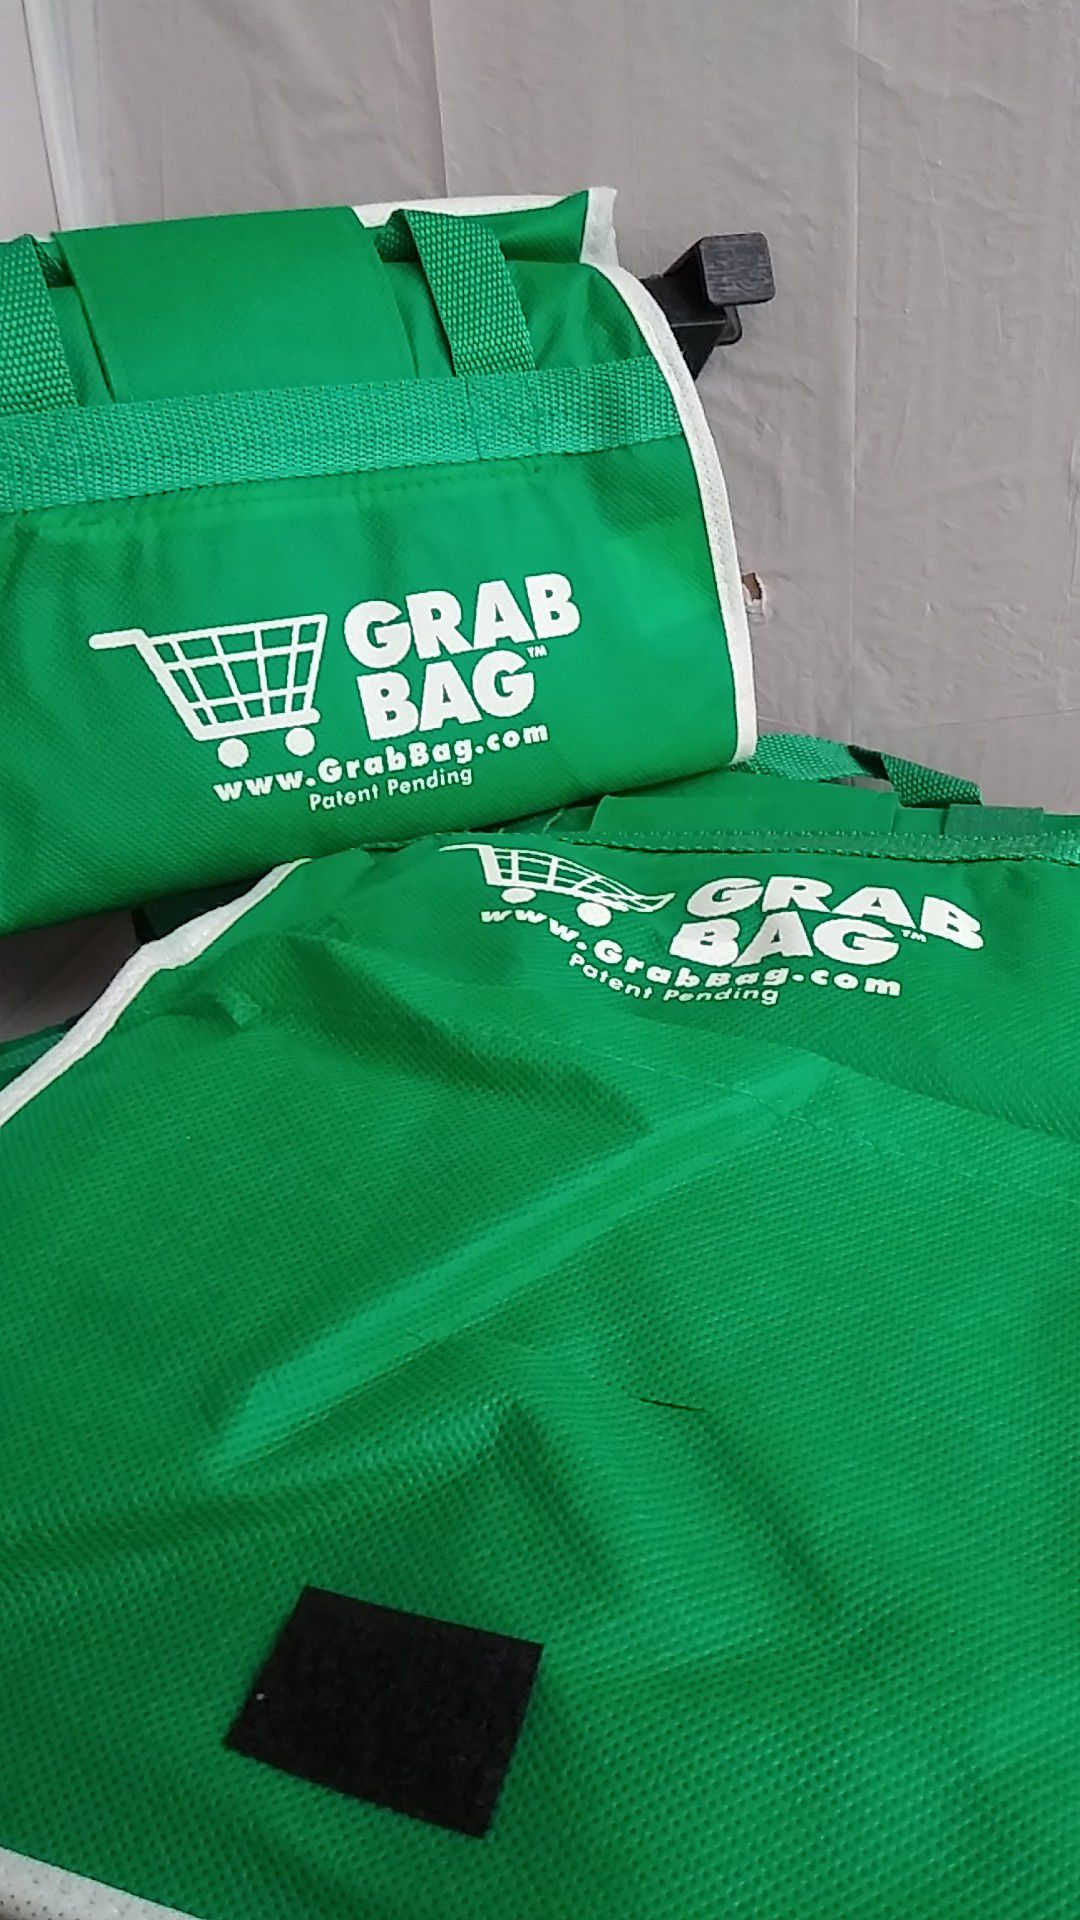 Grab Bag 4 bags